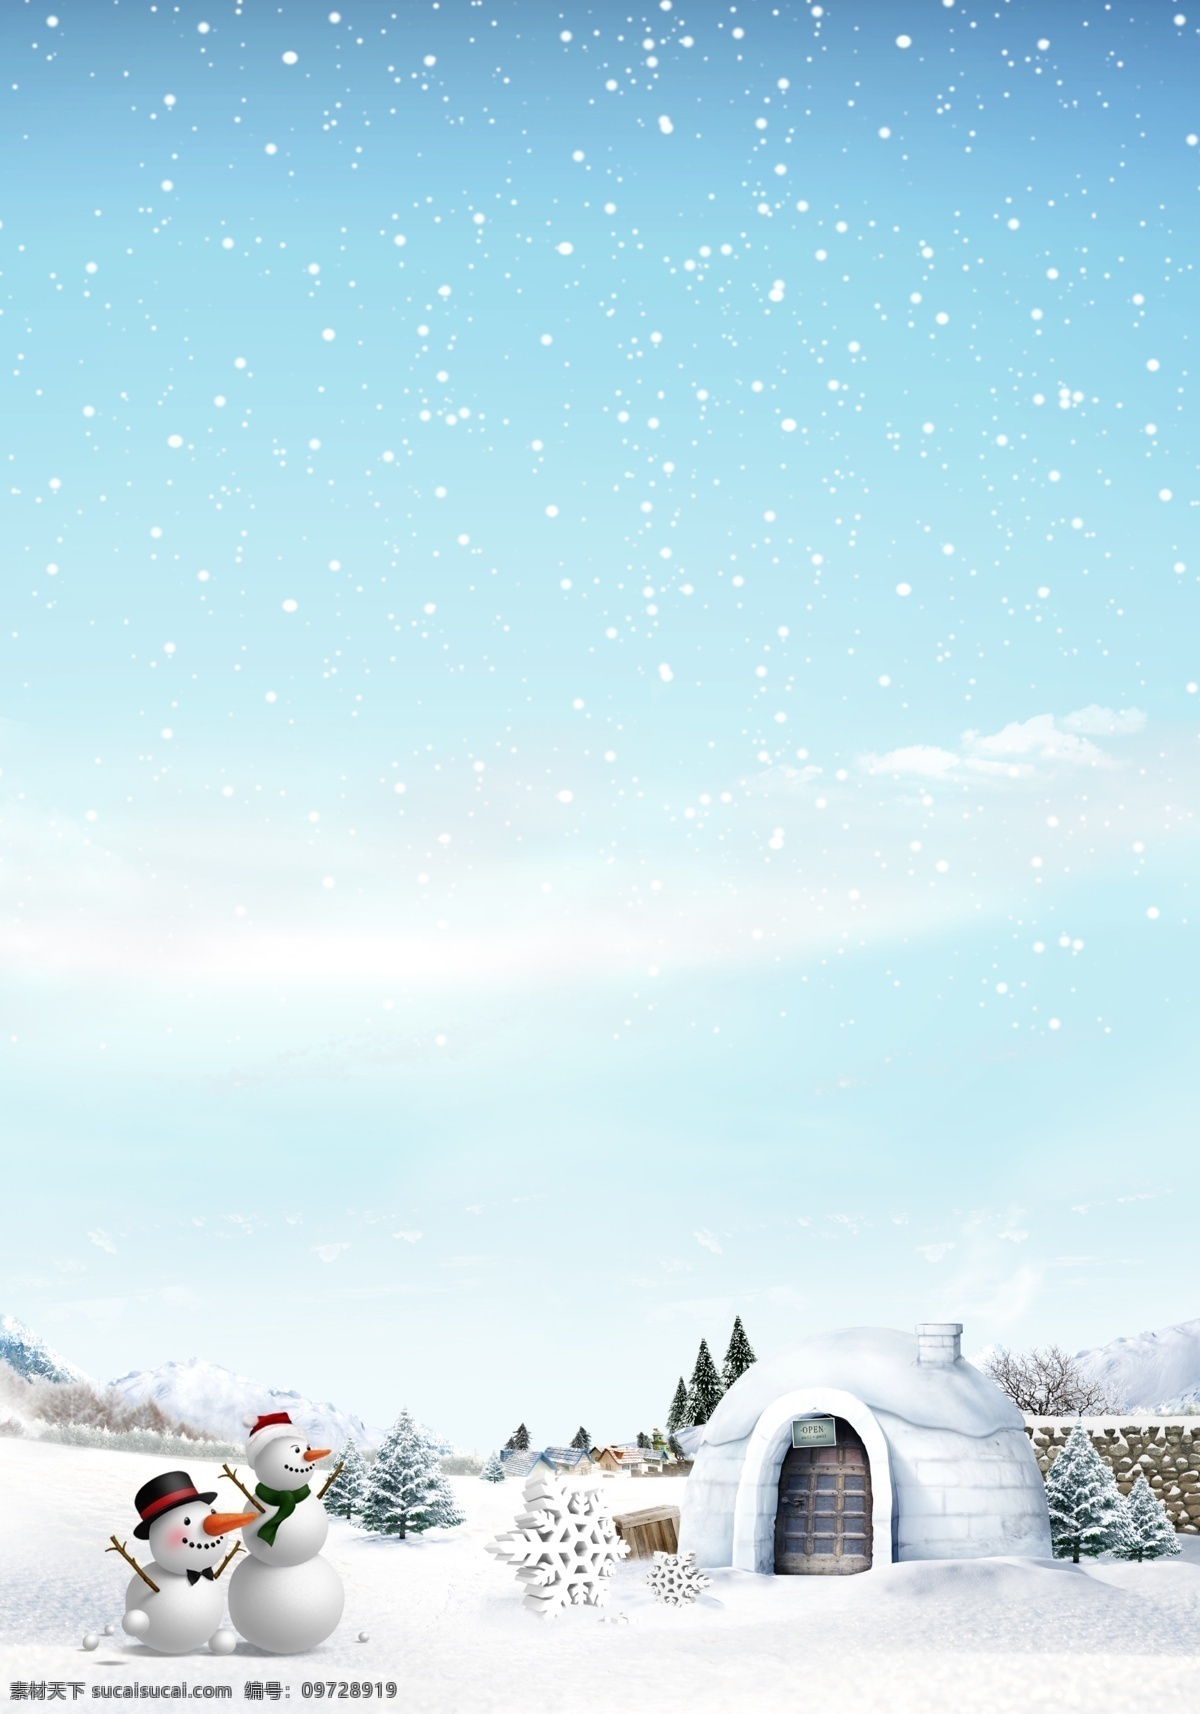 雪人背景图片 雪人背景 蓝色背景 雪人 房子